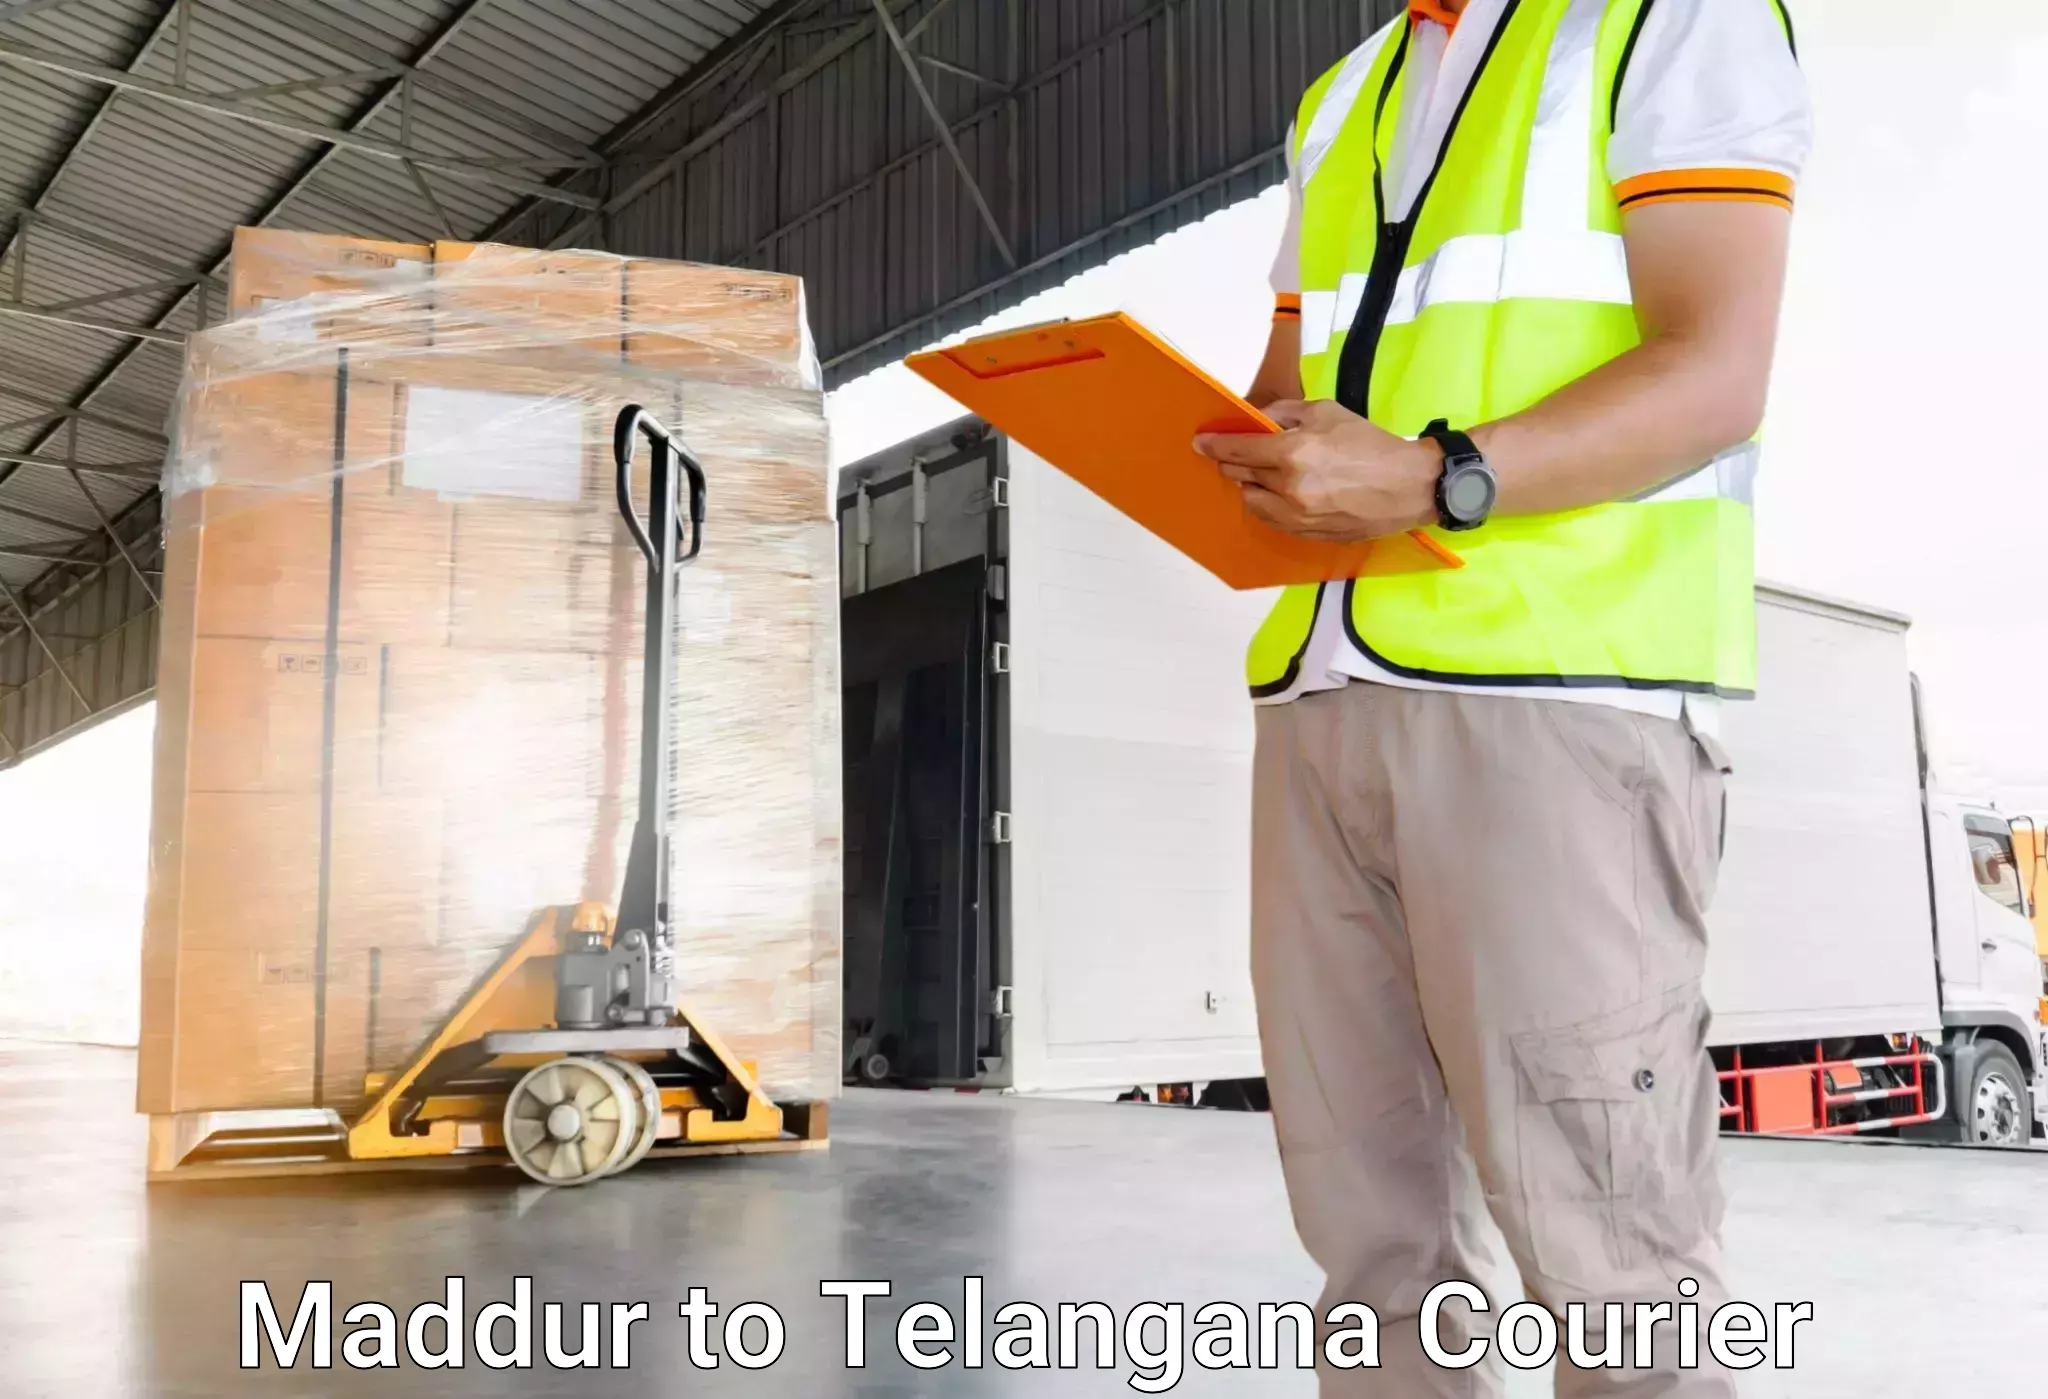 Express baggage shipping Maddur to Manopad